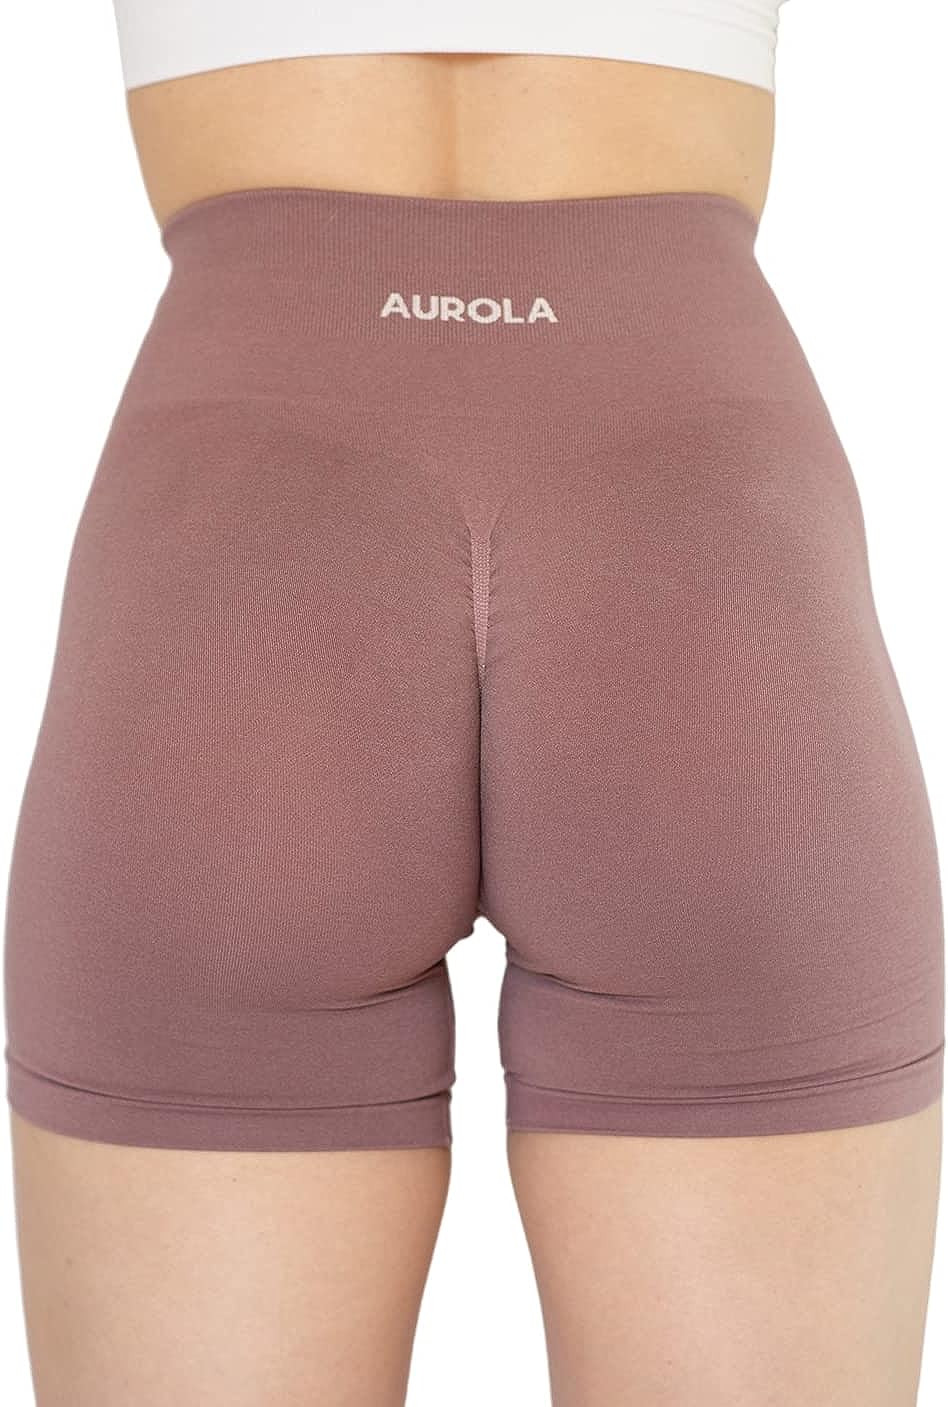 AUROLA Intensify Workout Shorts for Women Seamless Scrunch Short Gym Yoga  Runnin